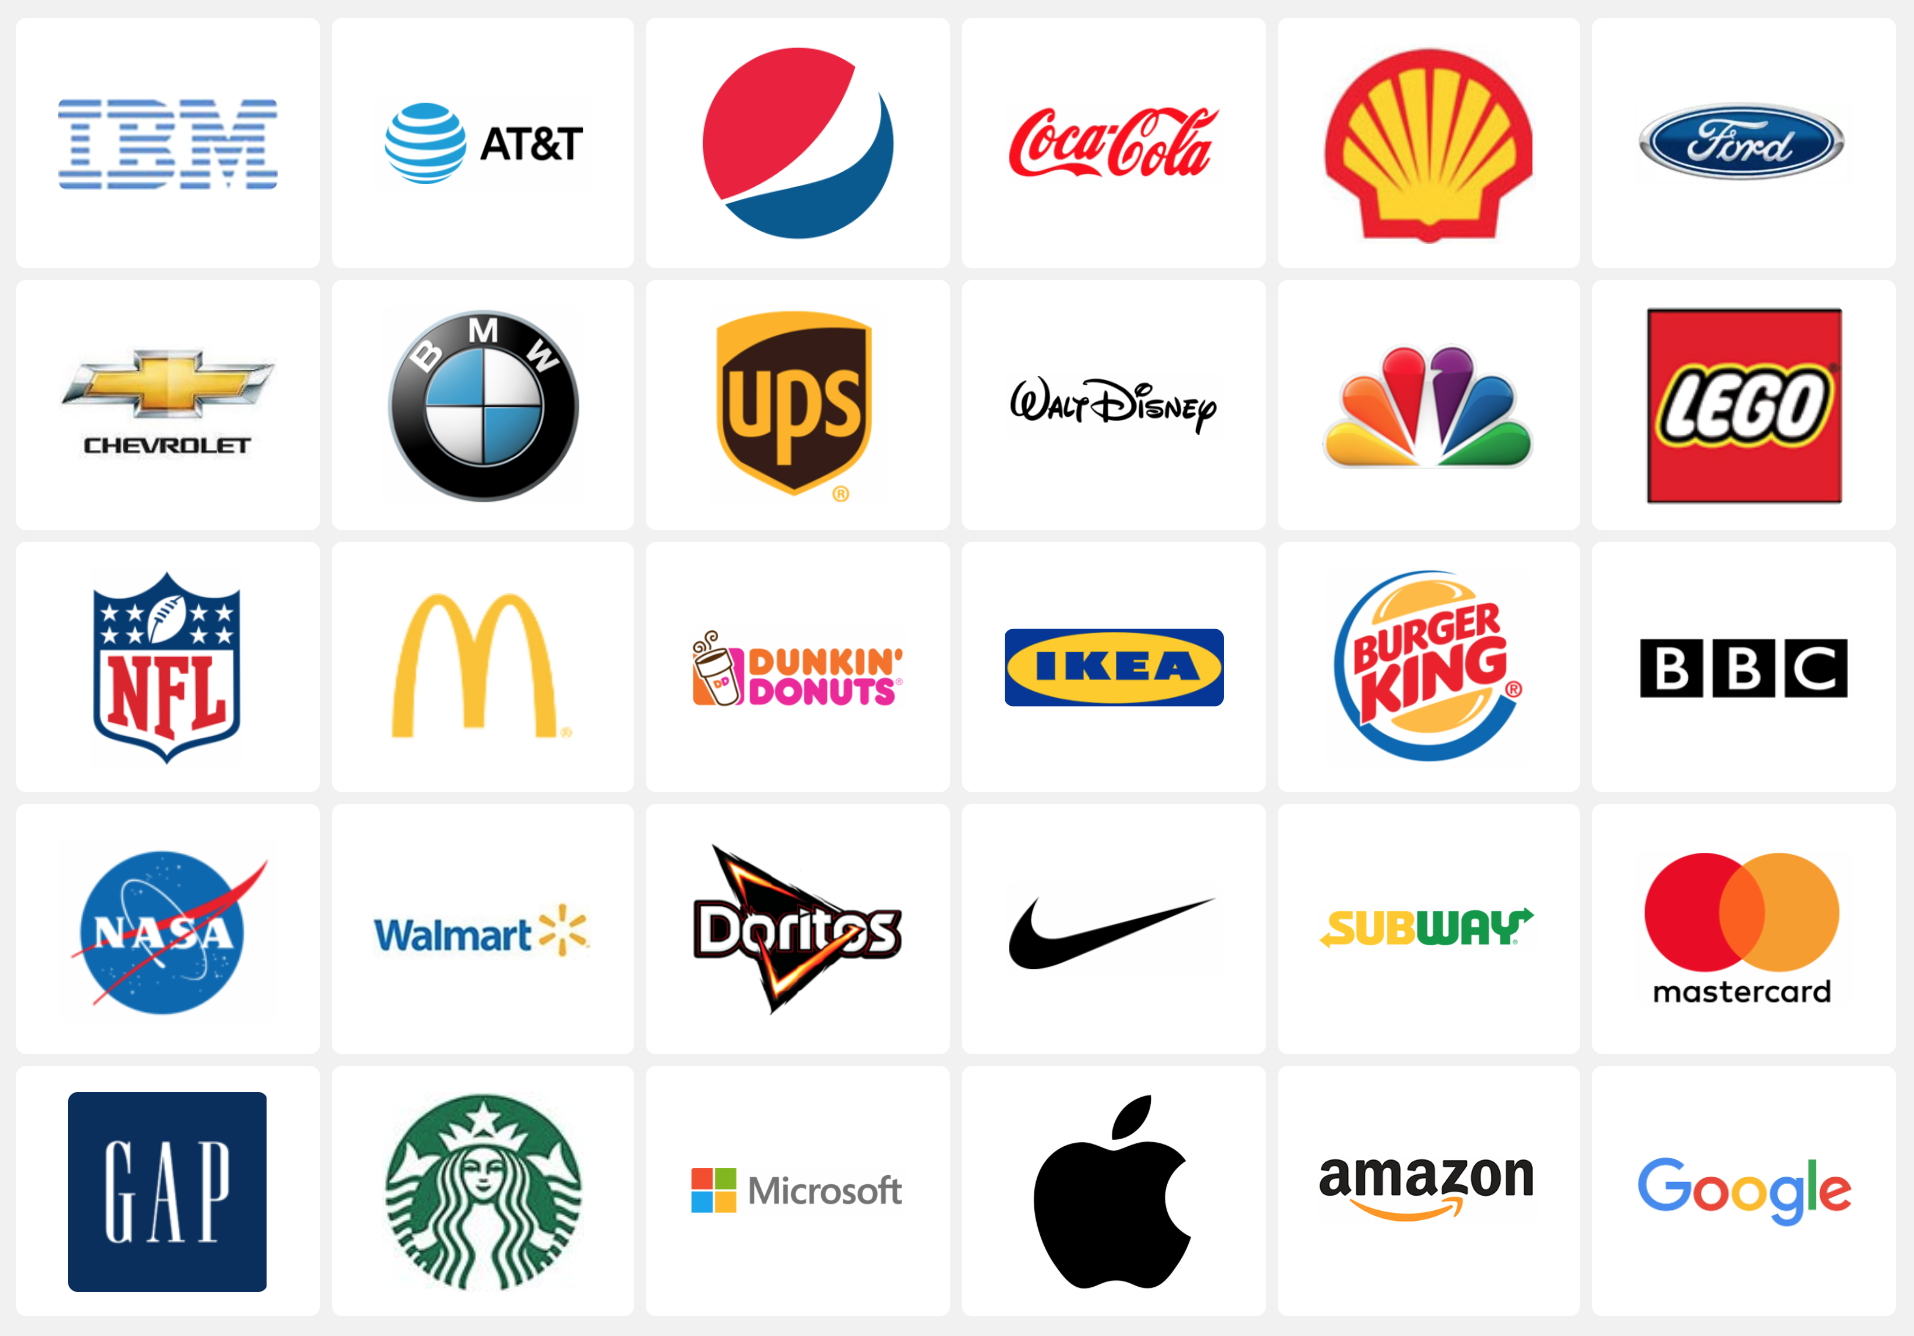 Логотипы брендов одежды в картинках: список, названия, история, фото